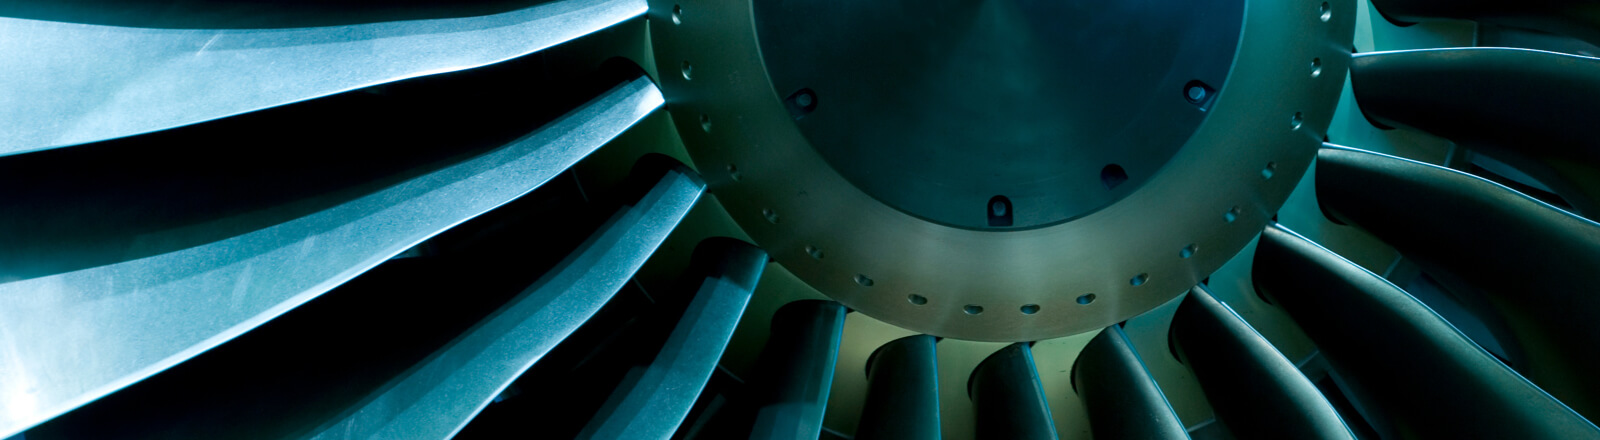 industrial-fan-turbine-aerospace-high-tech